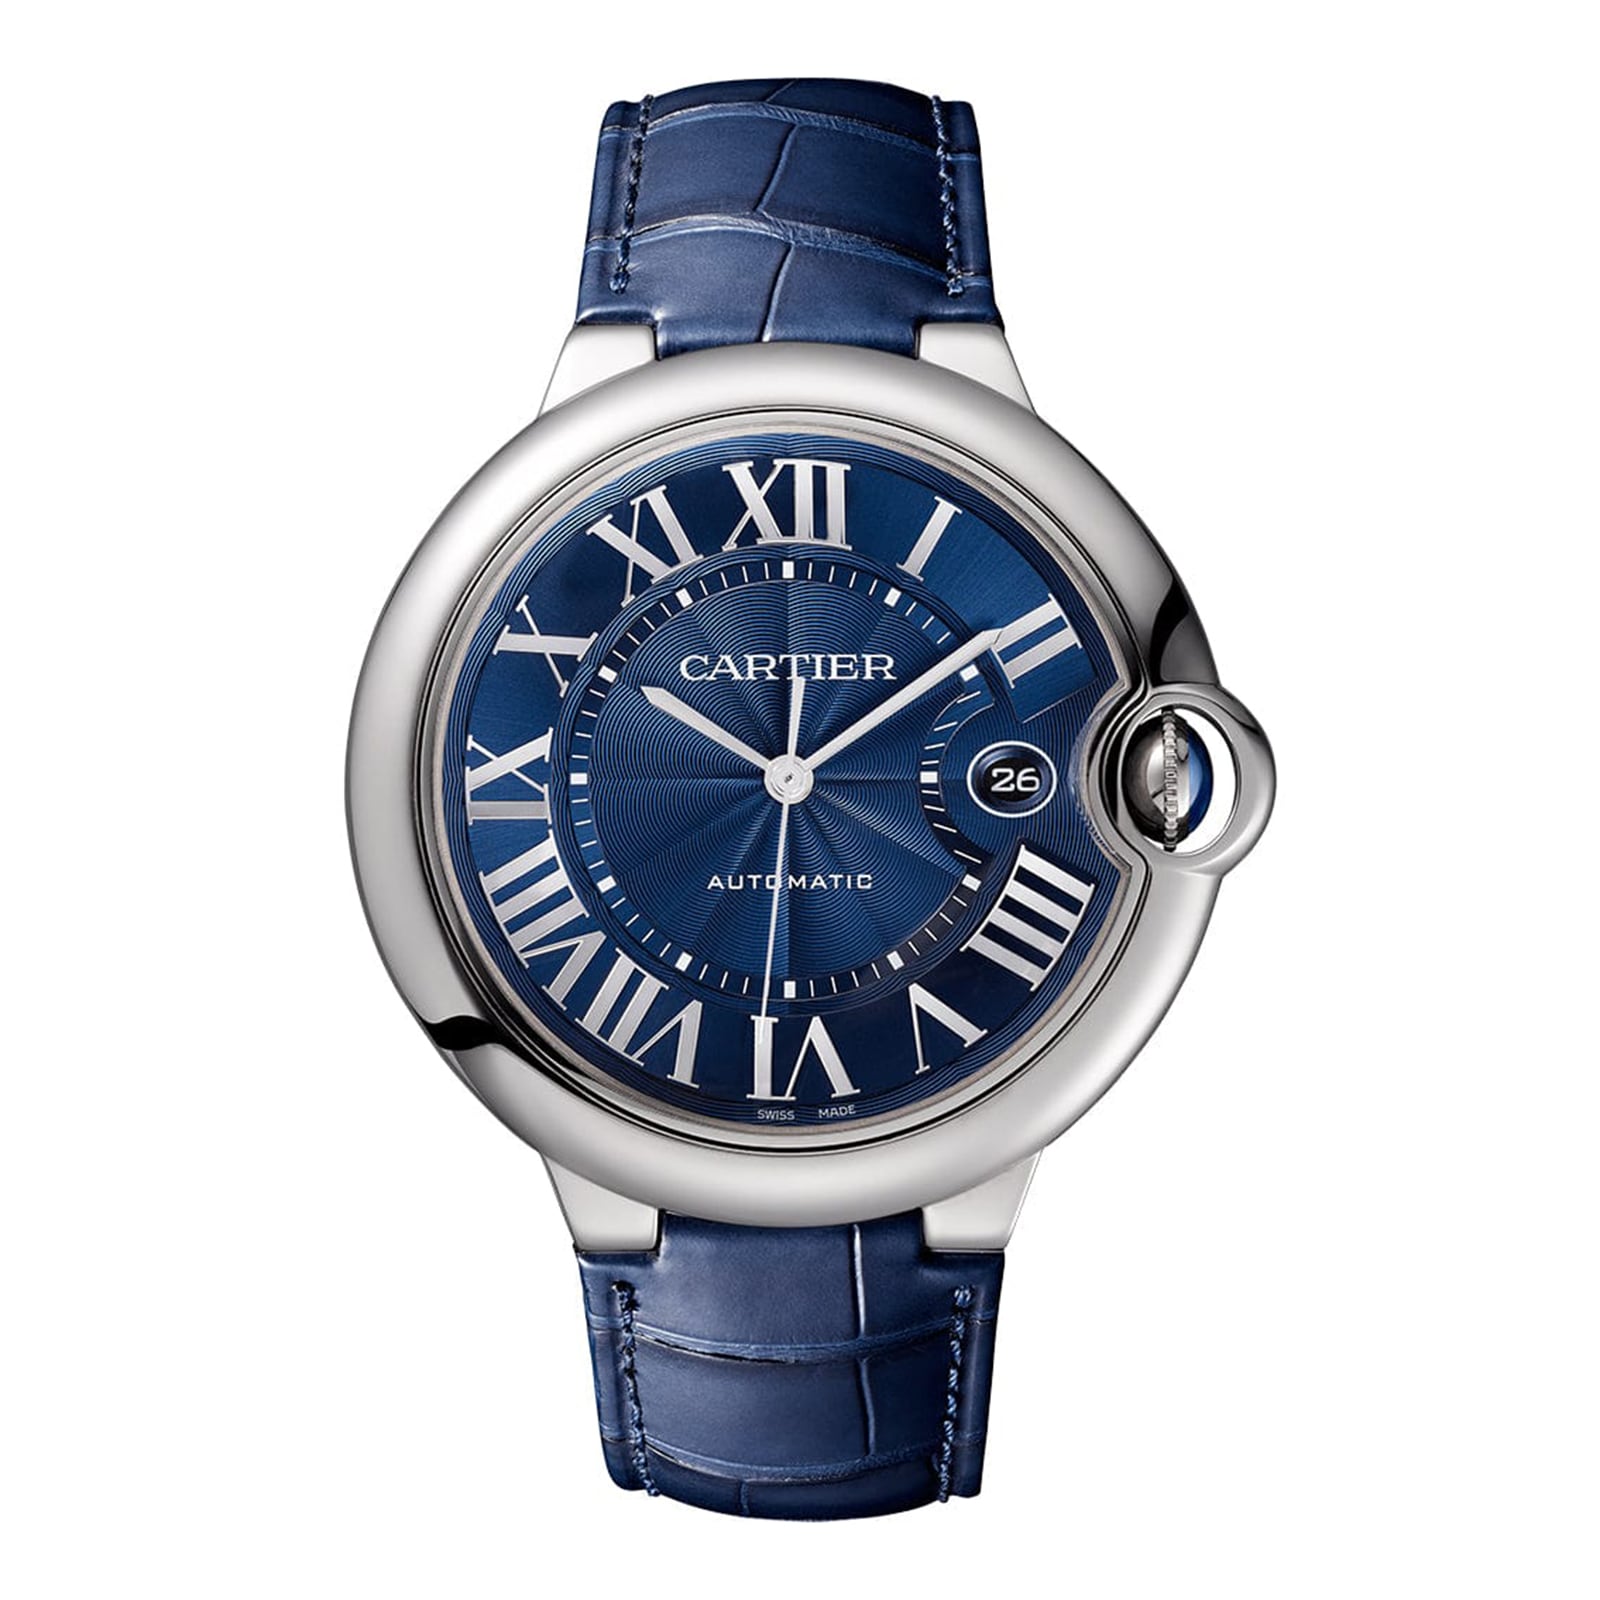 Ballon Bleu De Cartier Watch, 42 Mm. Mechanical Movement With Automatic Winding, Caliber 1847 MC. WSBB0027